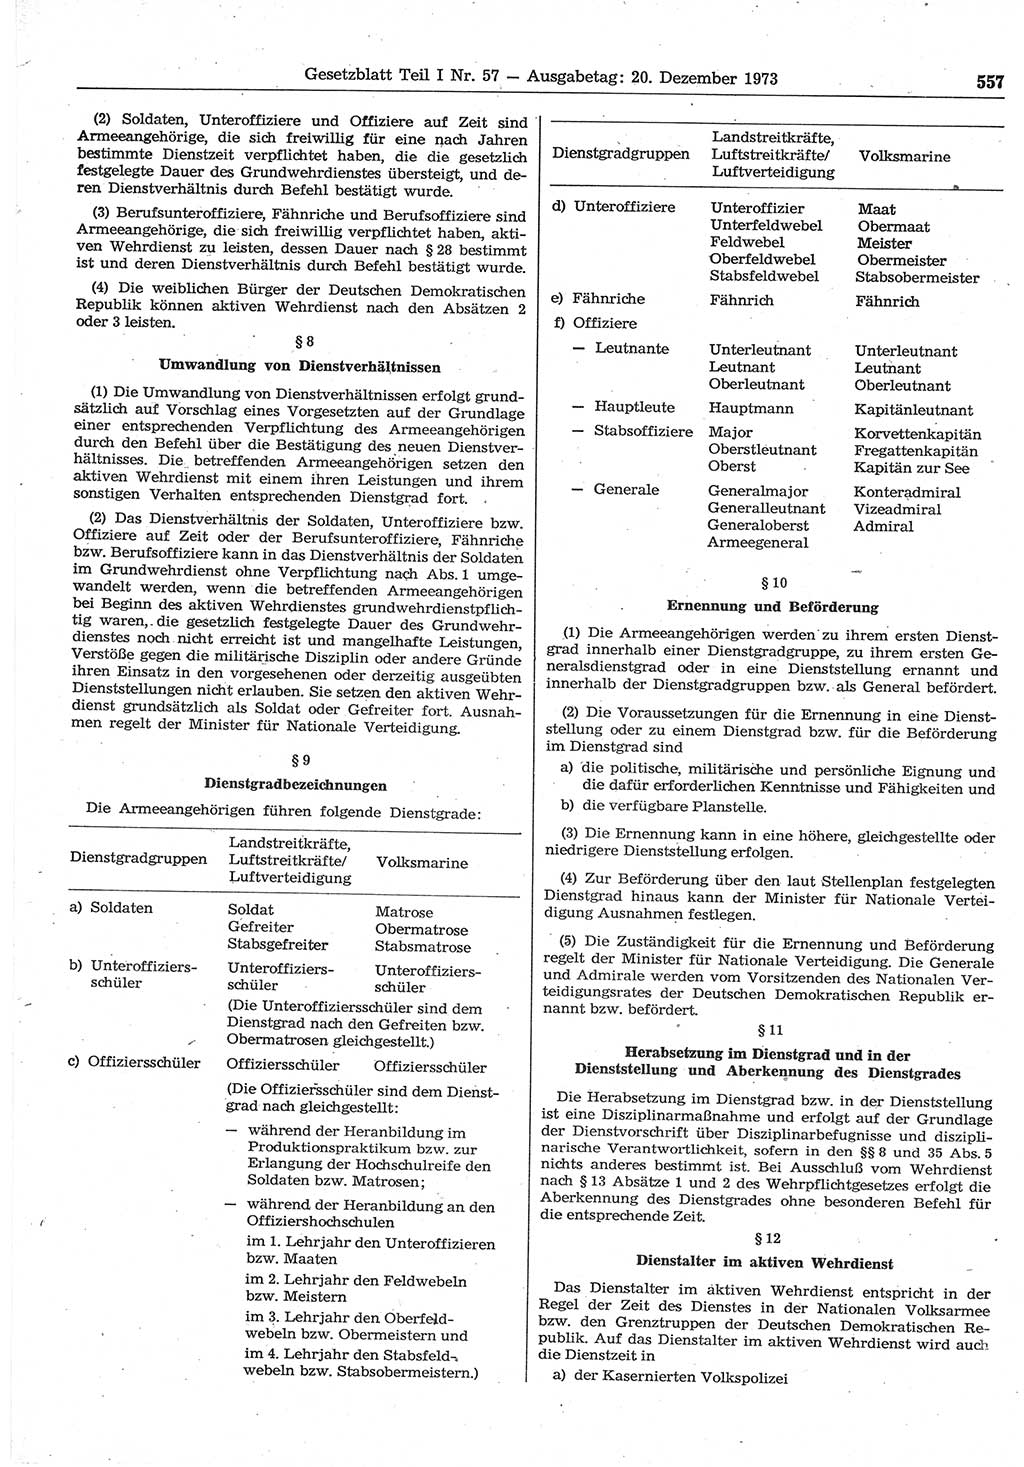 Gesetzblatt (GBl.) der Deutschen Demokratischen Republik (DDR) Teil Ⅰ 1973, Seite 557 (GBl. DDR Ⅰ 1973, S. 557)